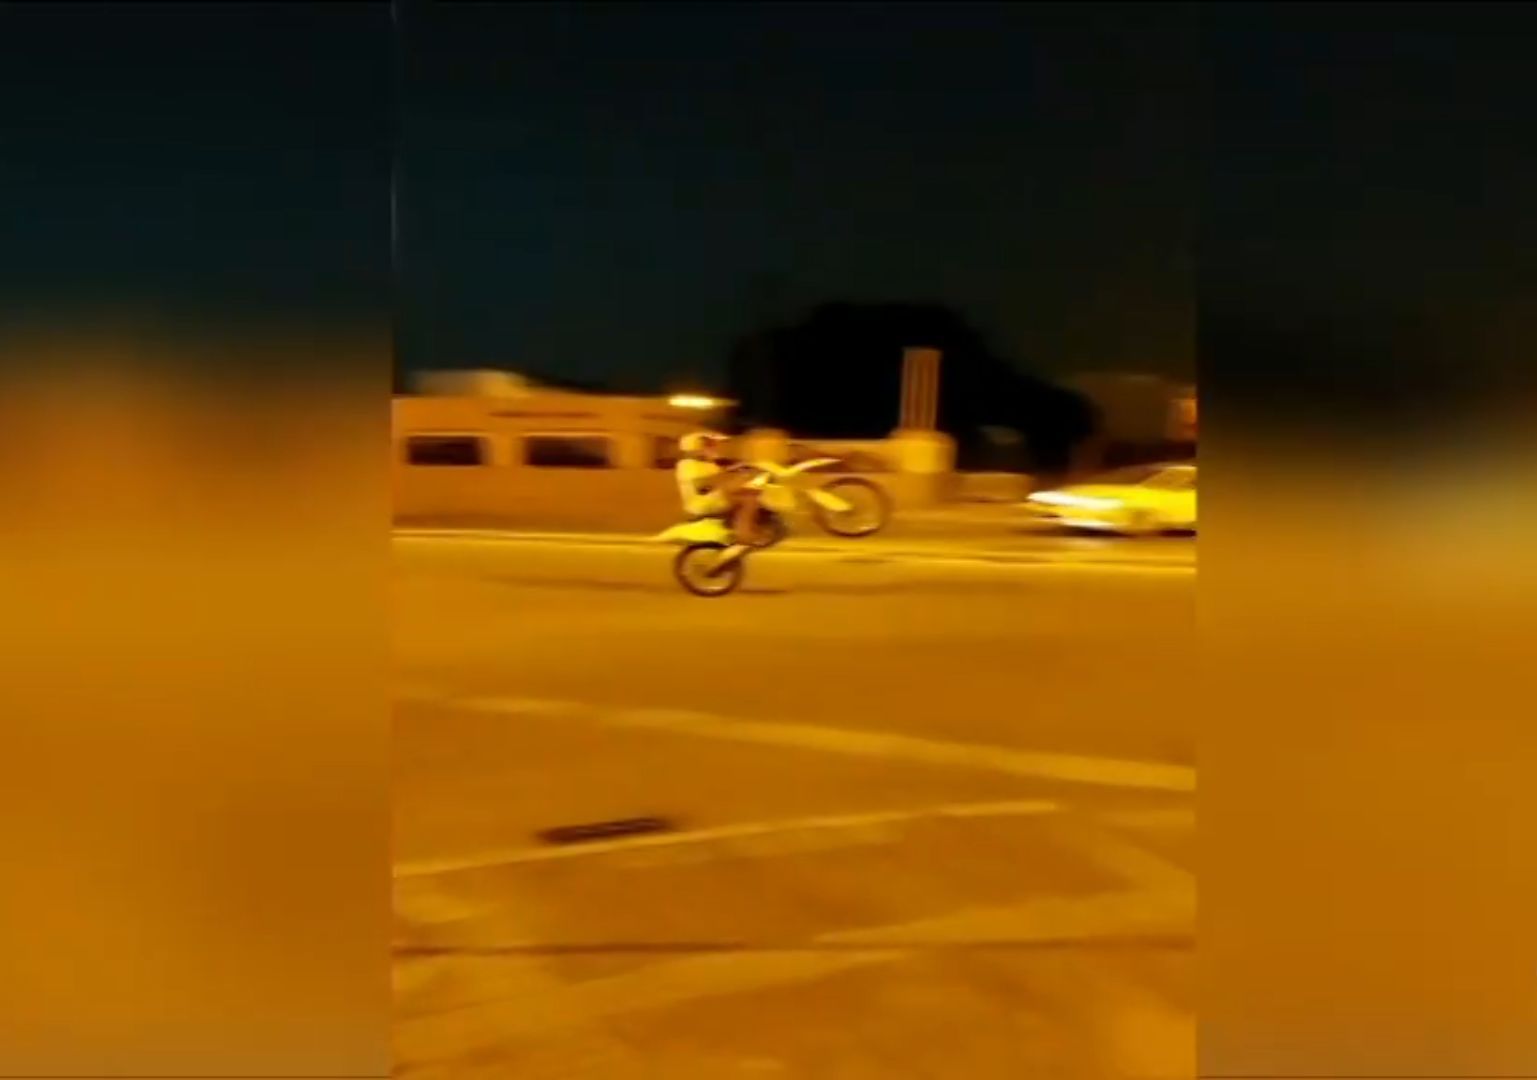 Uno de los vídeos de las carreras ilegales de motos facilitados por los vecinos de la Hijuela de las Coles, emitido por Canal Sur.